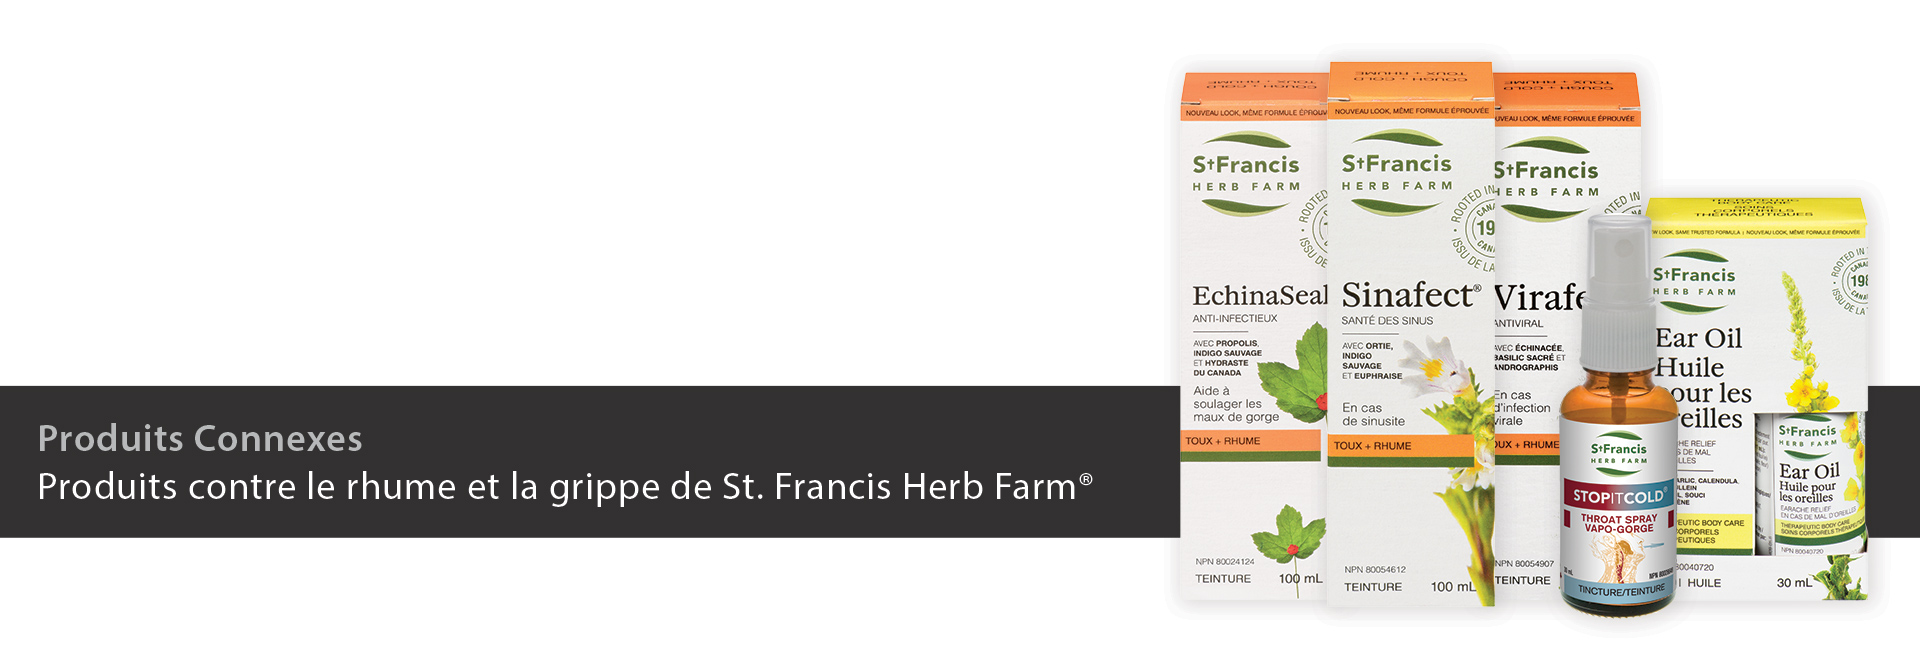 Produits contre le rhume et la grippe de St. Francis Herb Farm